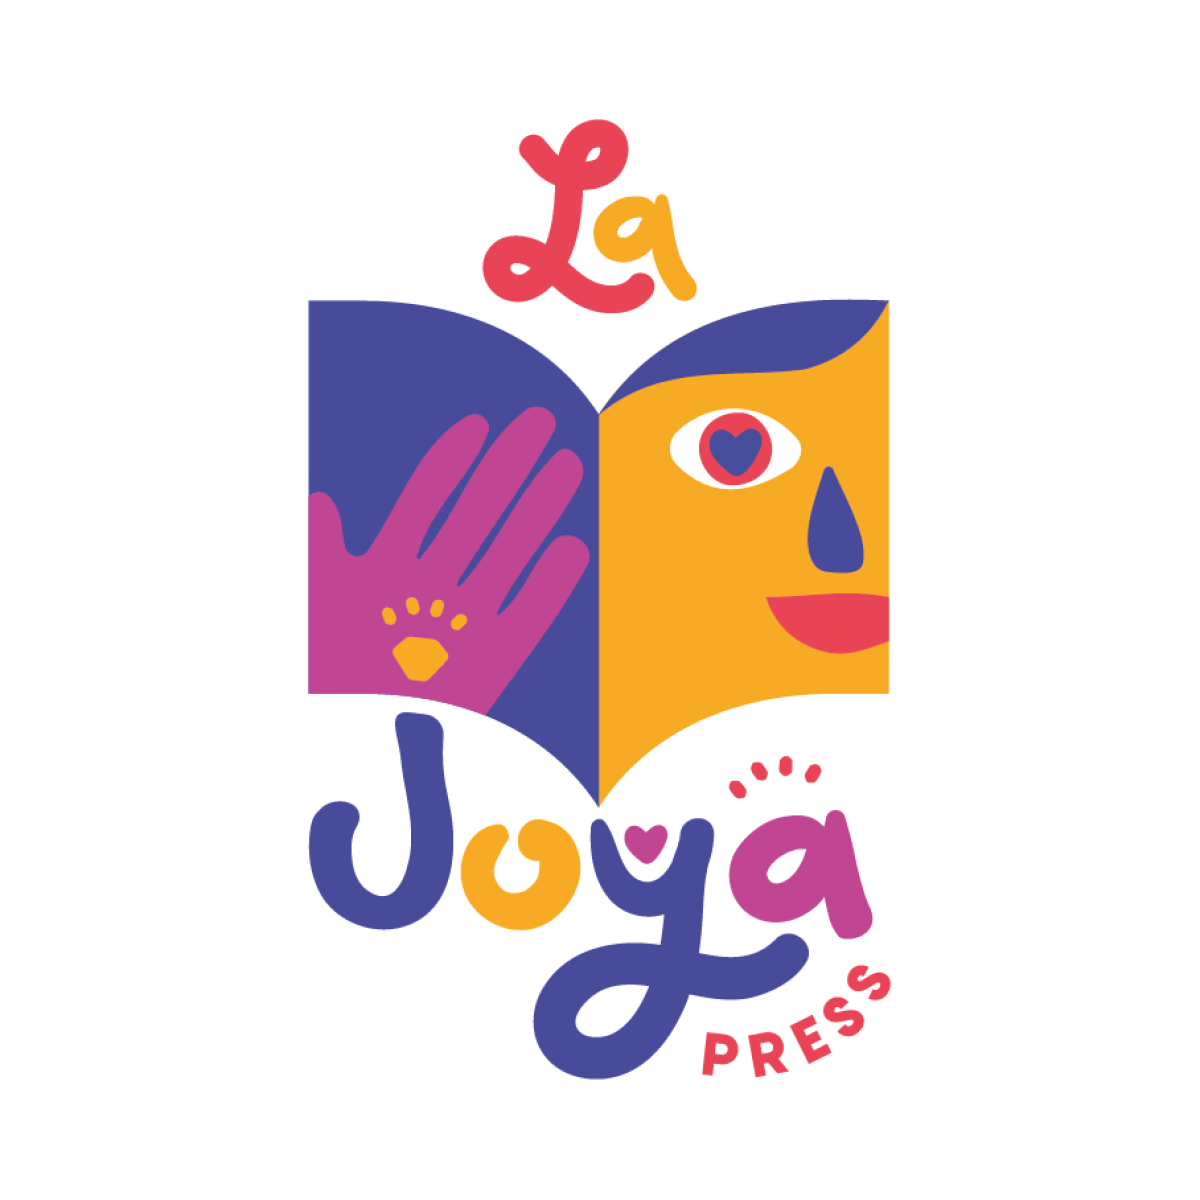 The planned logo for La Joya Press.